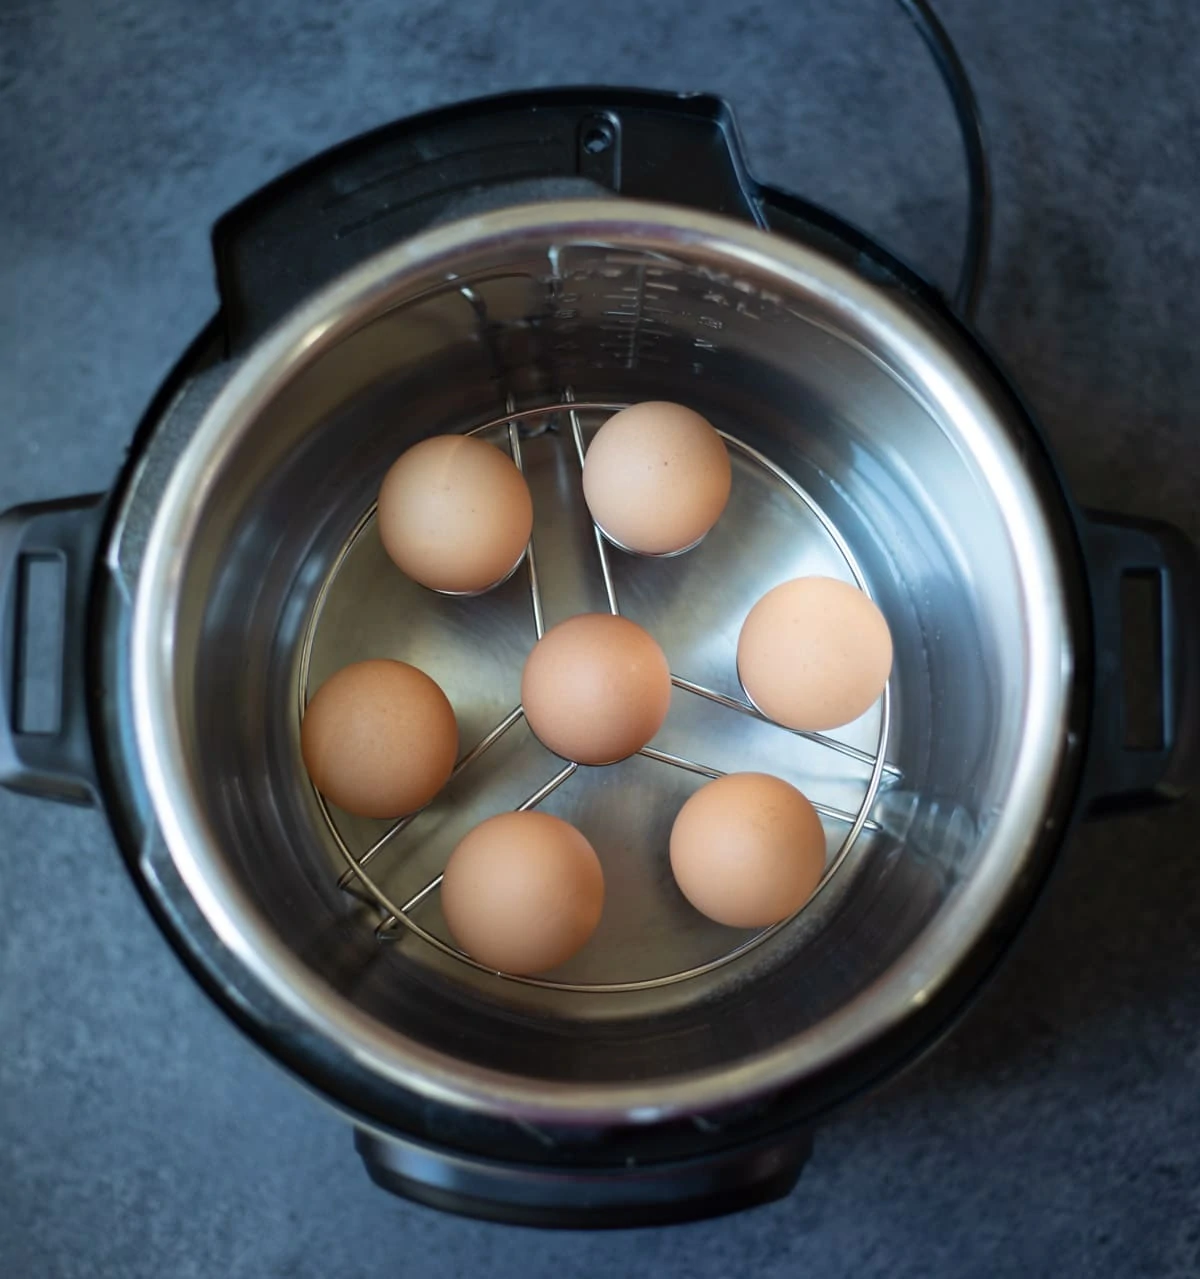 Eggs on an egg trivet in the instant pot